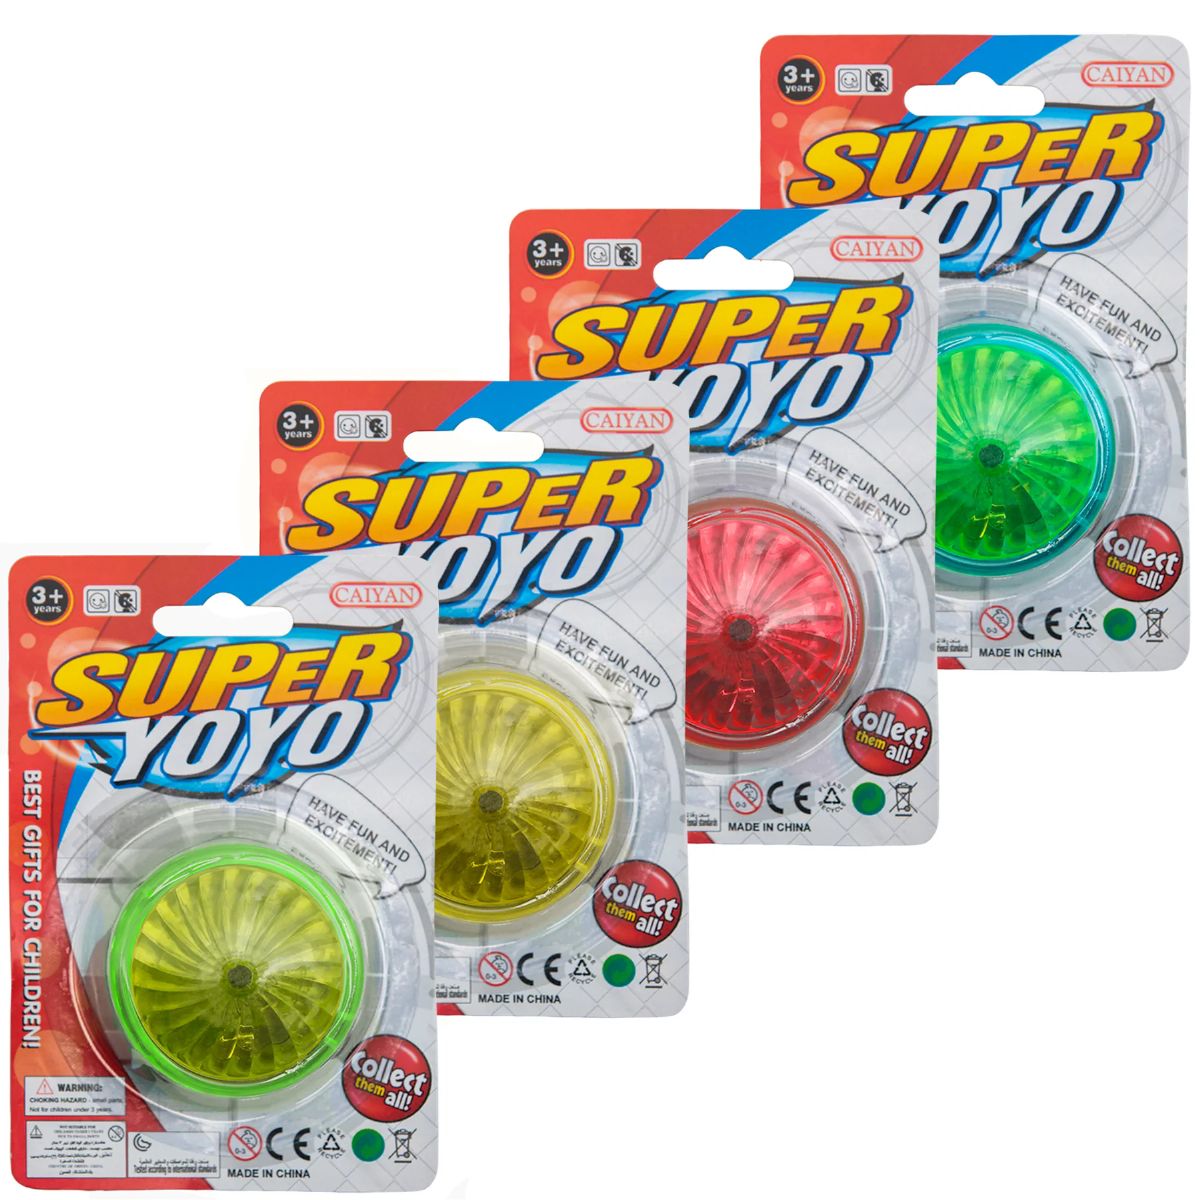 50 Pieces of Super Yoyo